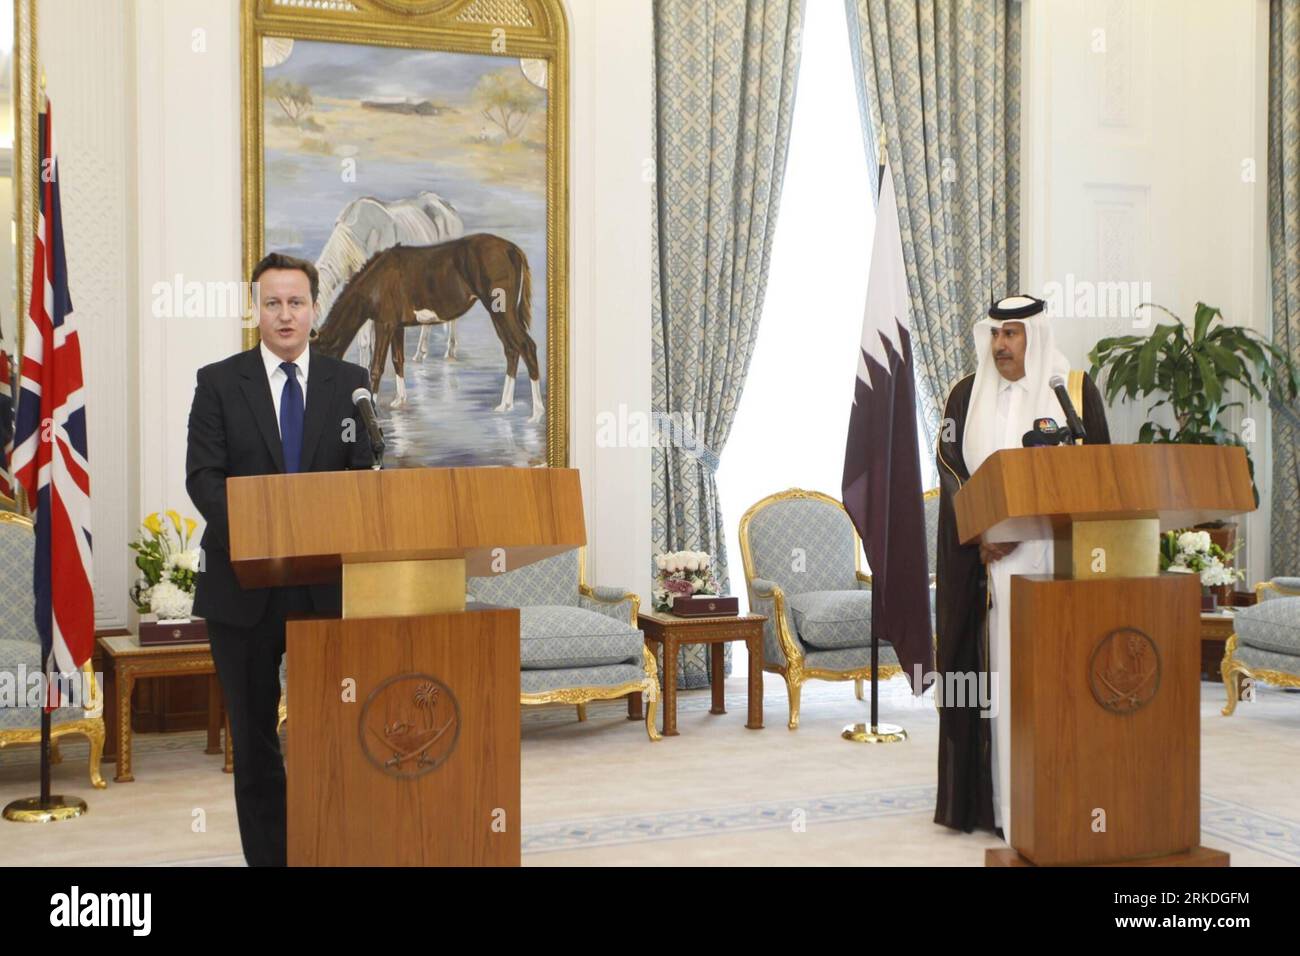 Bildnummer: 54946262 Datum: 23.02.2011 Copyright: imago/Xinhua DOHA, 23. Februar 2011 (Xinhua) -- der britische Premierminister David Cameron (L) und der katarische Premierminister und Außenminister Sheikh Hamad bin Jassim bin Jabor Al-Thani halten am 23. Februar 2011 eine gemeinsame Pressekonferenz in Doha, der Hauptstadt Katars. Der britische Premierminister ist auf einem zweitägigen offiziellen Besuch in Katar. (Xinhua/Maneesh Bakshi) (djj) QATAR-BRITAIN-PM-PRESS CONFERENCE PUBLICATIONxNOTxINxCHN People Politik kbdig xdp 2011 quer premiumd Bildnummer 54946262 Datum 23 02 2011 Copyright Imago XINHUA Doha 23. Februar 2011 XINHUA britischer Premierminister David Stockfoto